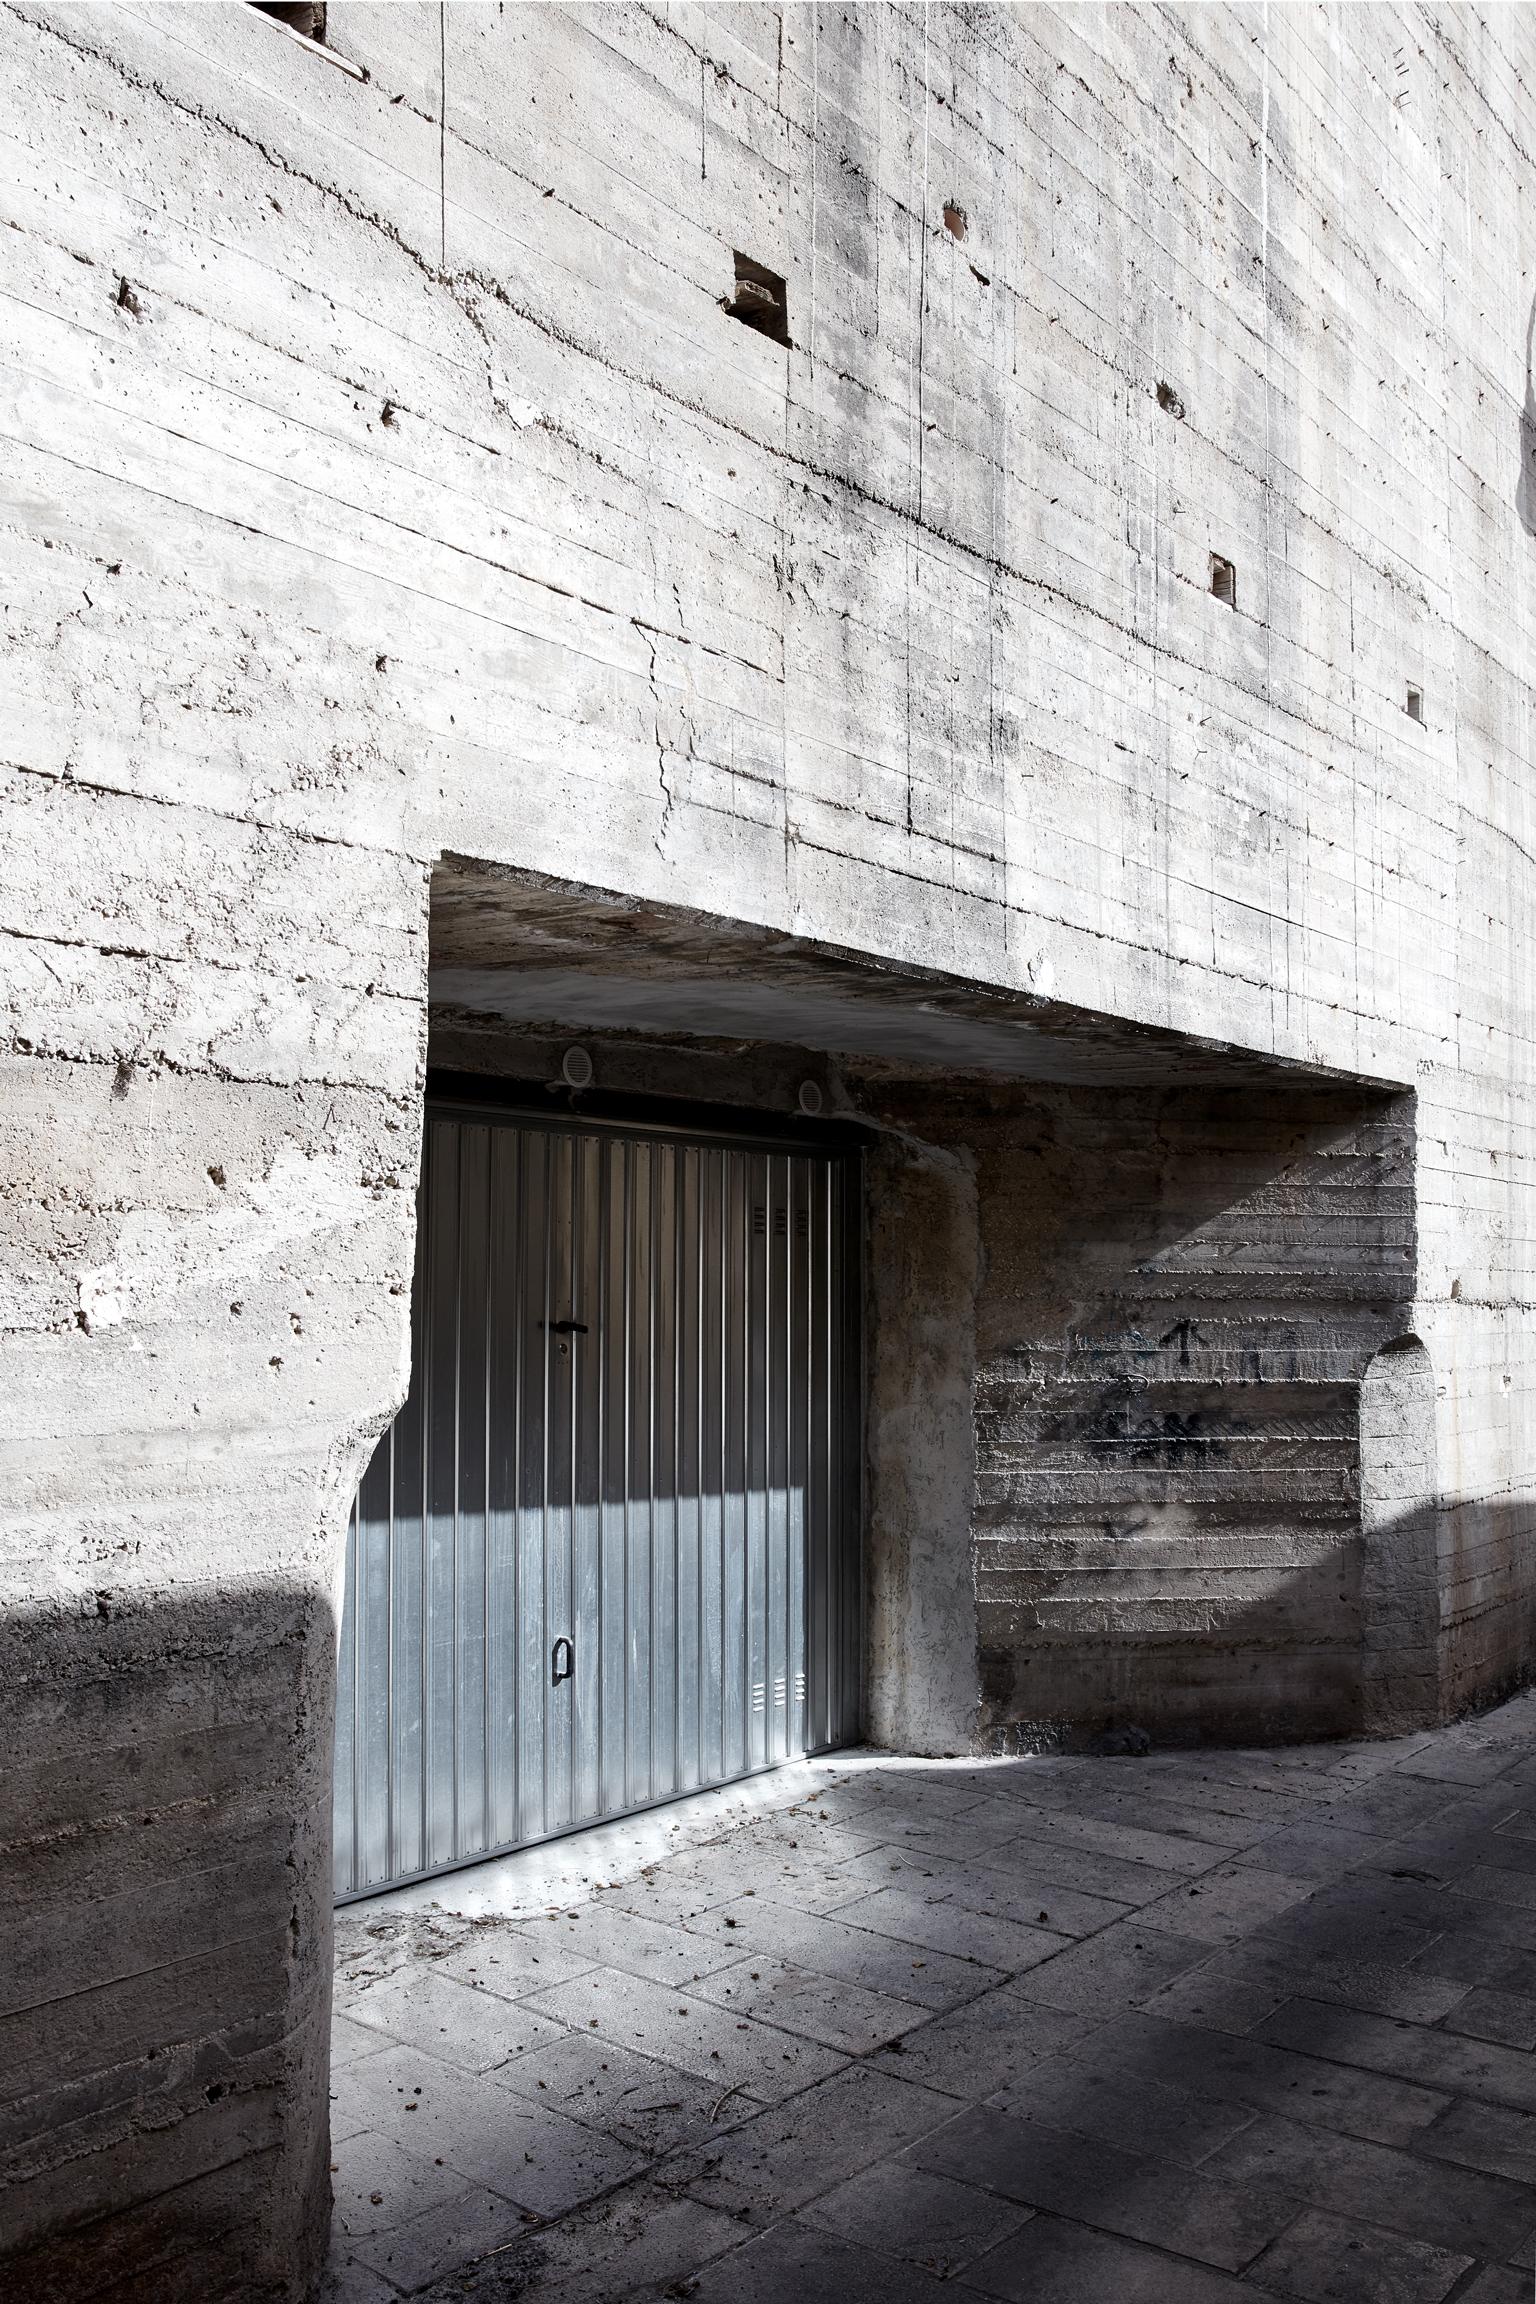 Frank Schott Abstract Print – Modica – Großformatfotografie der brutalistischen Architektur